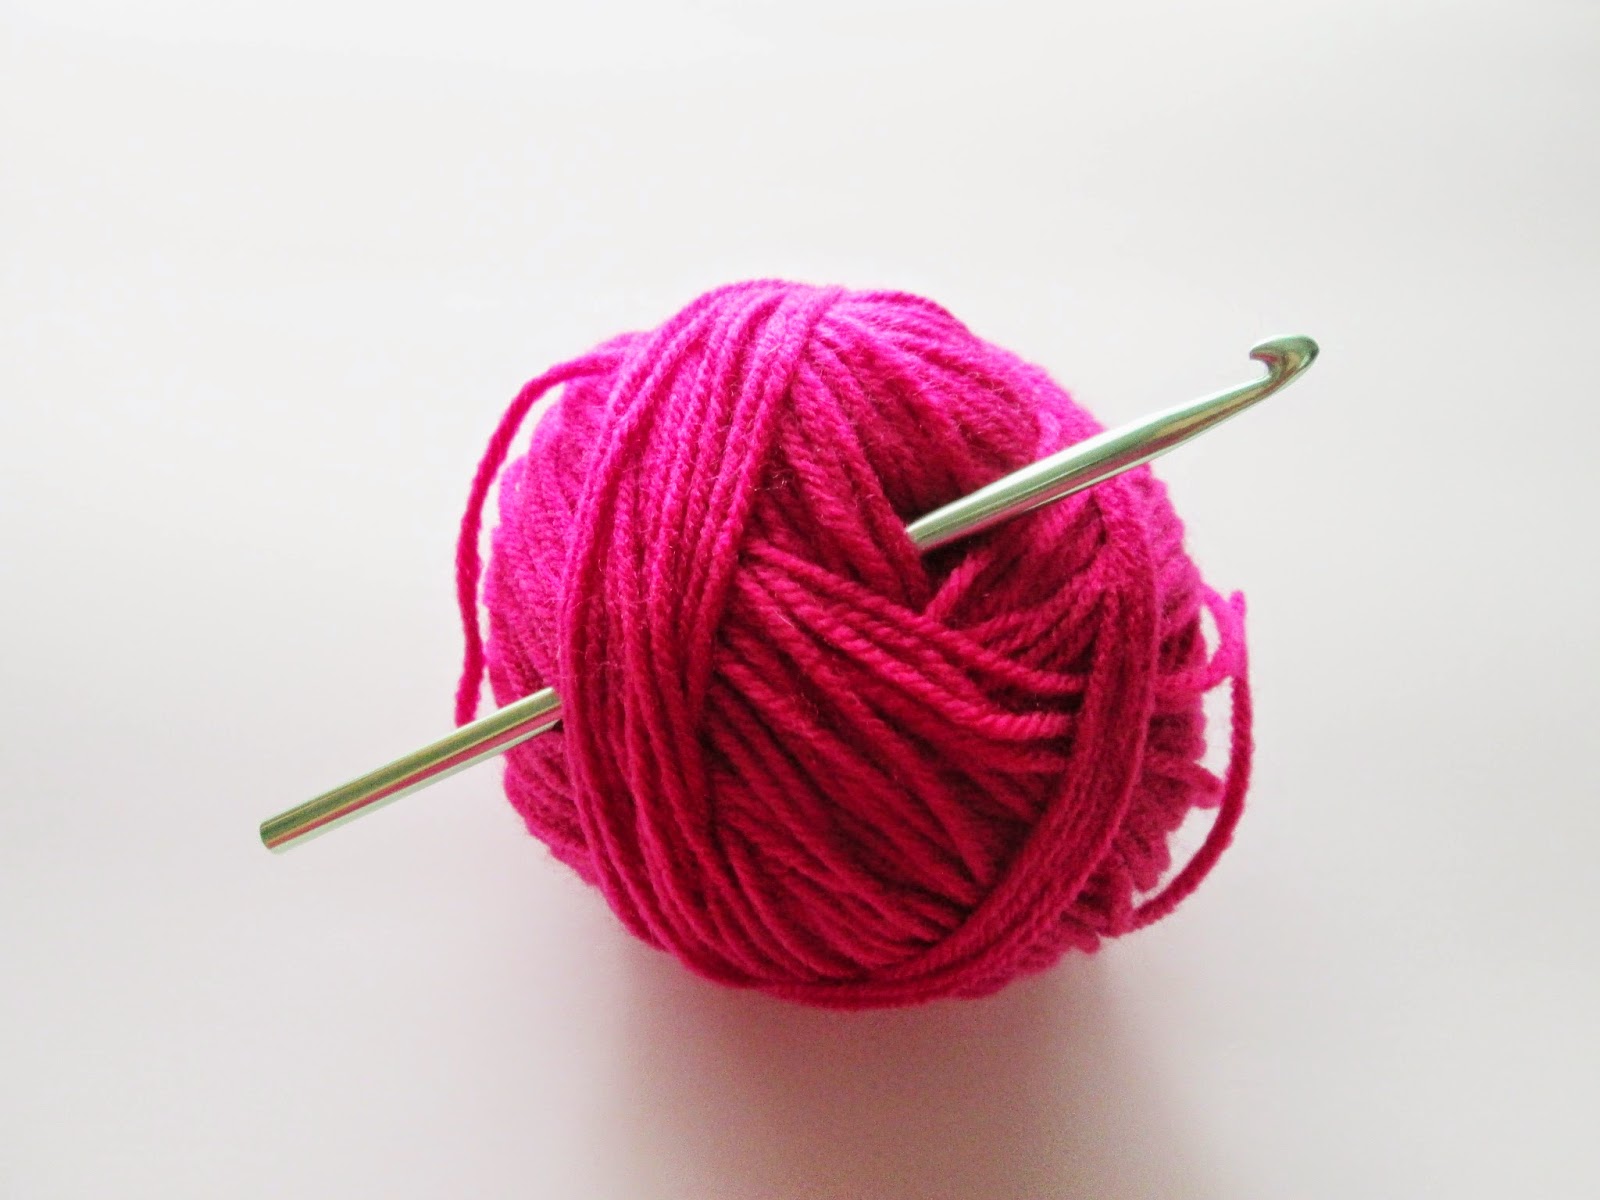 crochet yarn clipart - photo #42